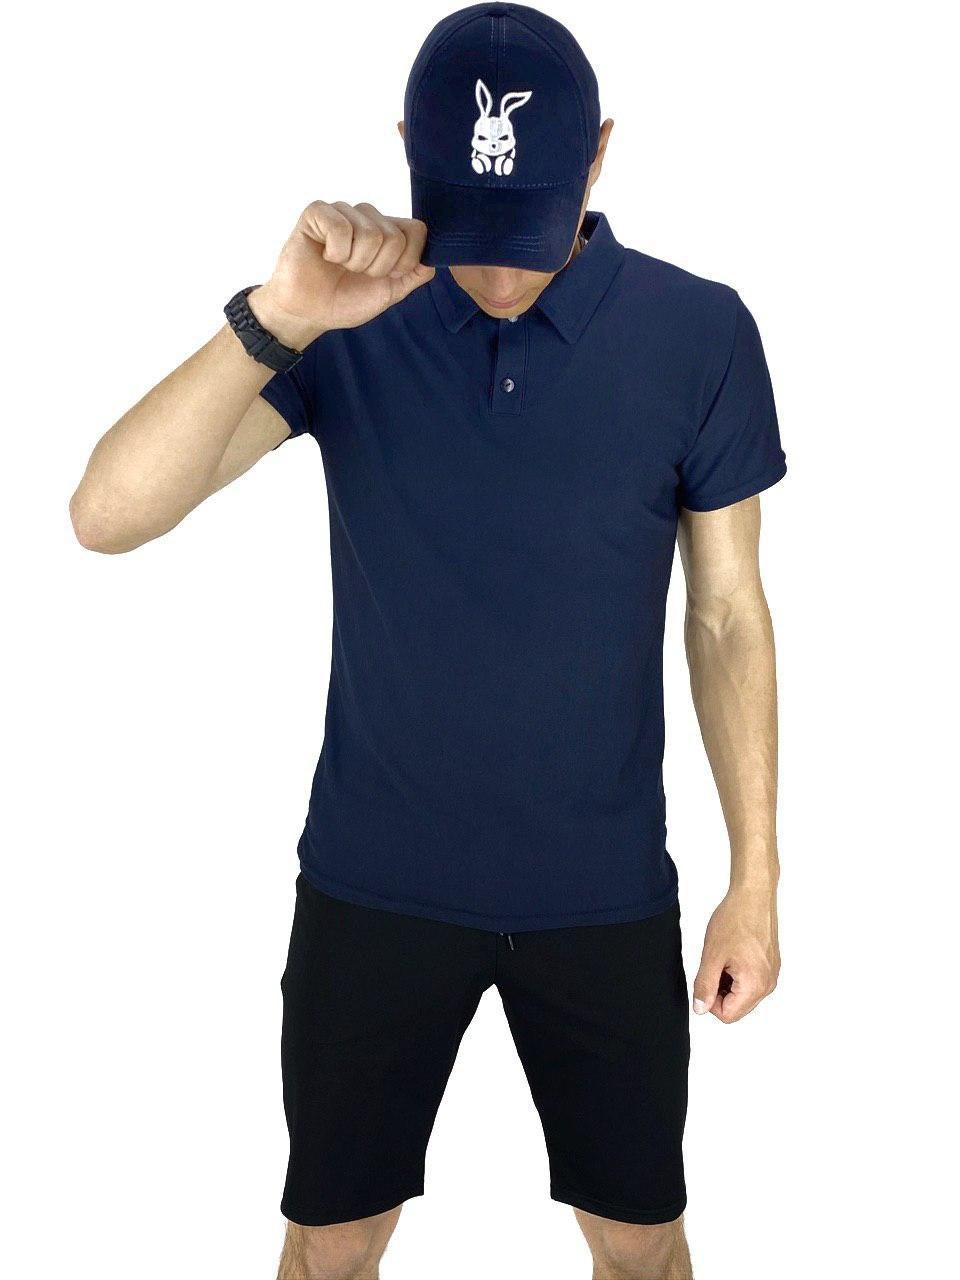 Костюм Intruder LaCosta річний синій-чорний. Чоловіча футболка поло+Чоловічі шорти трикотажні+ Кепка